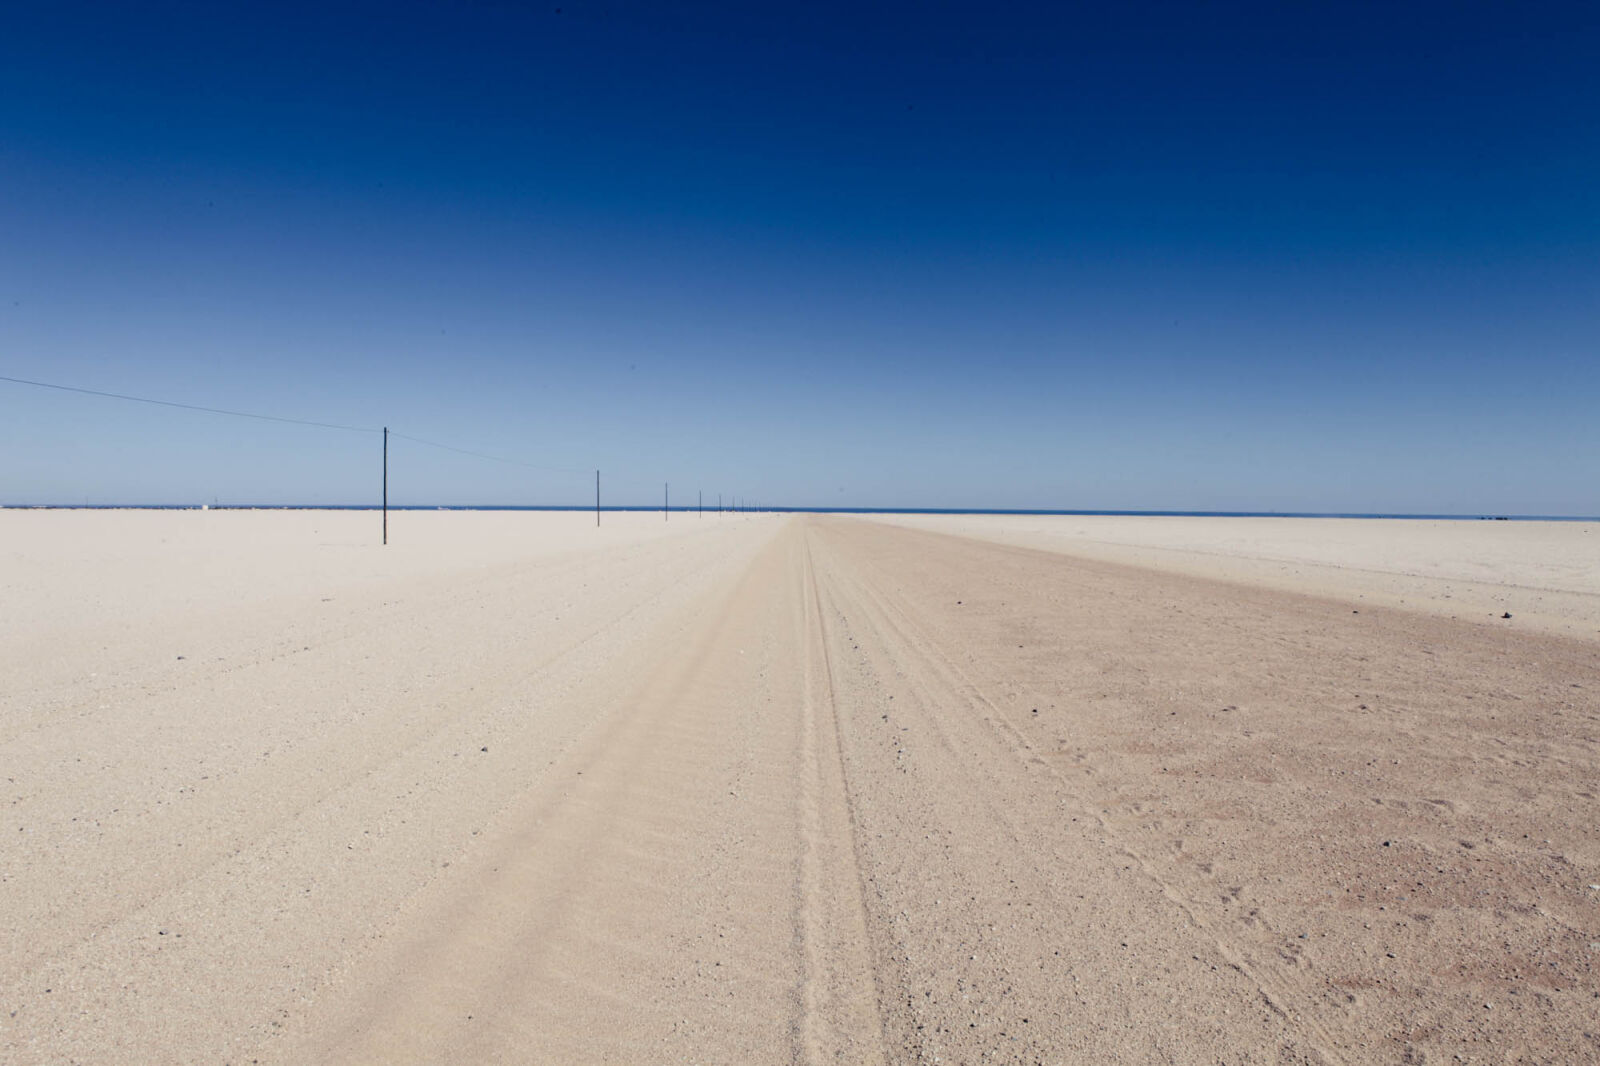 Canon EOS 5D Mark II sample photo. Blue, sky, desert, desert photography